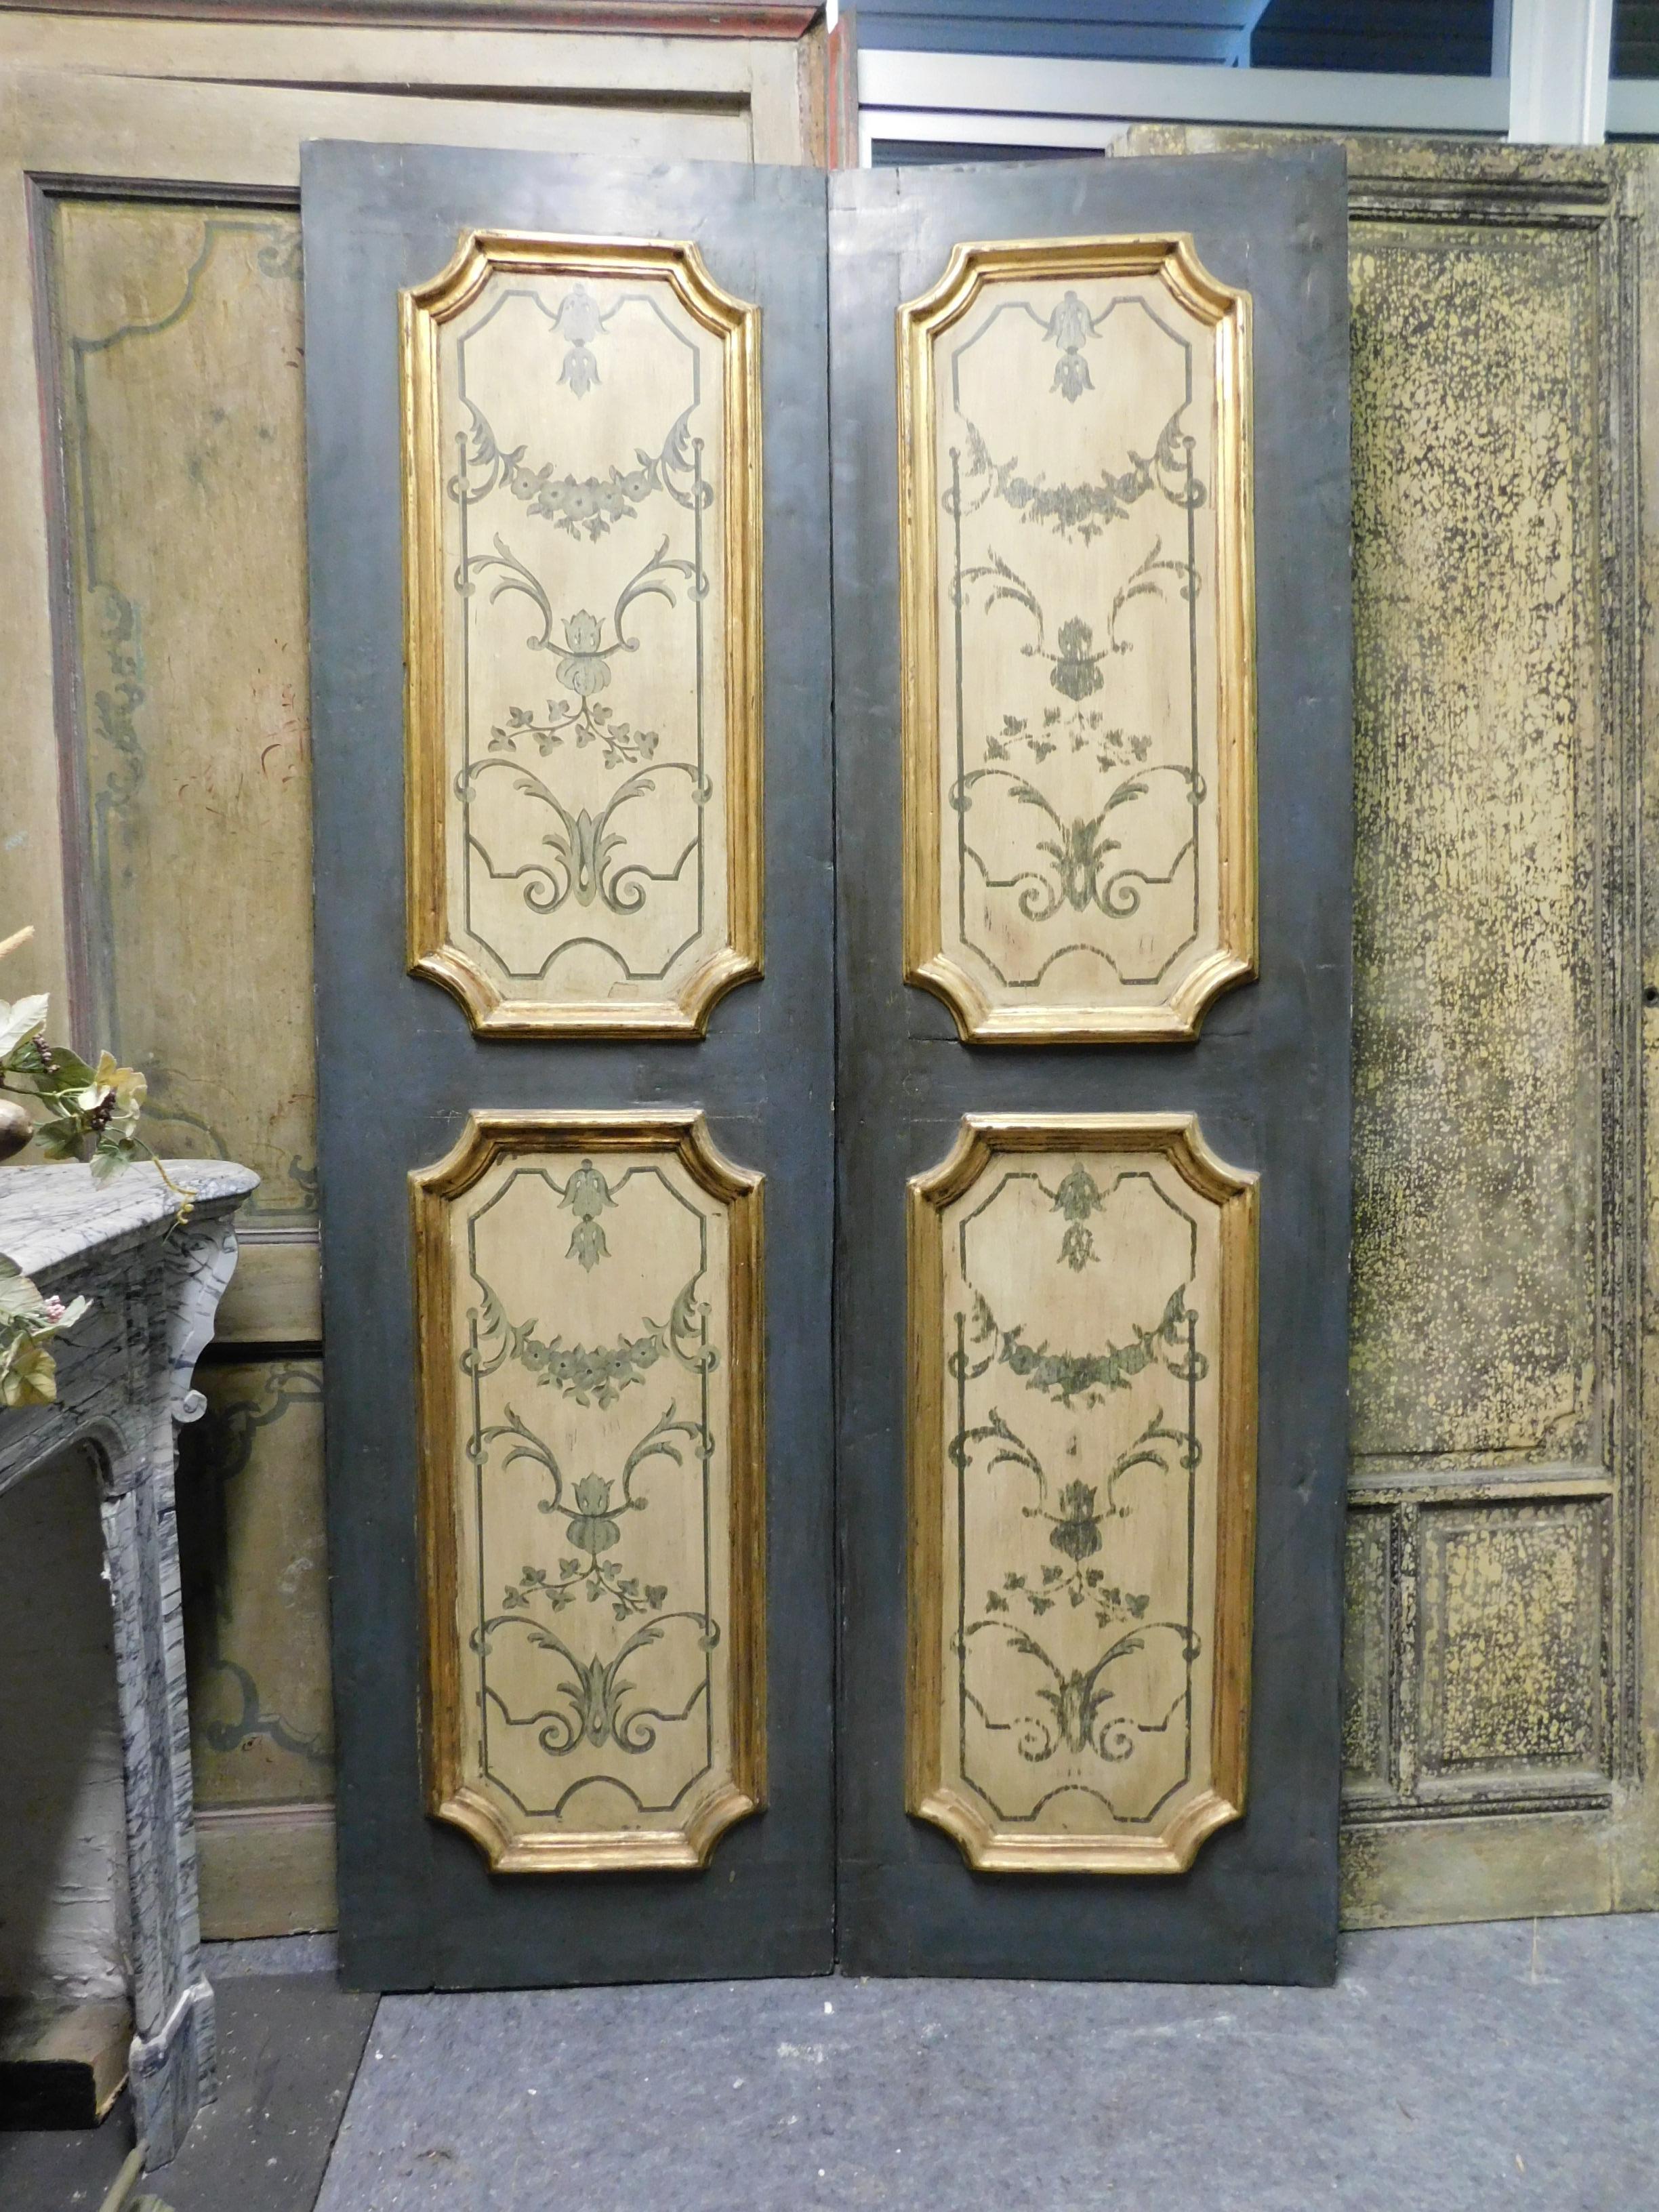 Ancienne porte d'intérieur, à deux battants, peinte à la main avec décoration dans les panneaux peints, avec molure profonde et dorée, typique et originale en bois massif du plein dix-huitième siècle, construite entièrement par artisan pour un